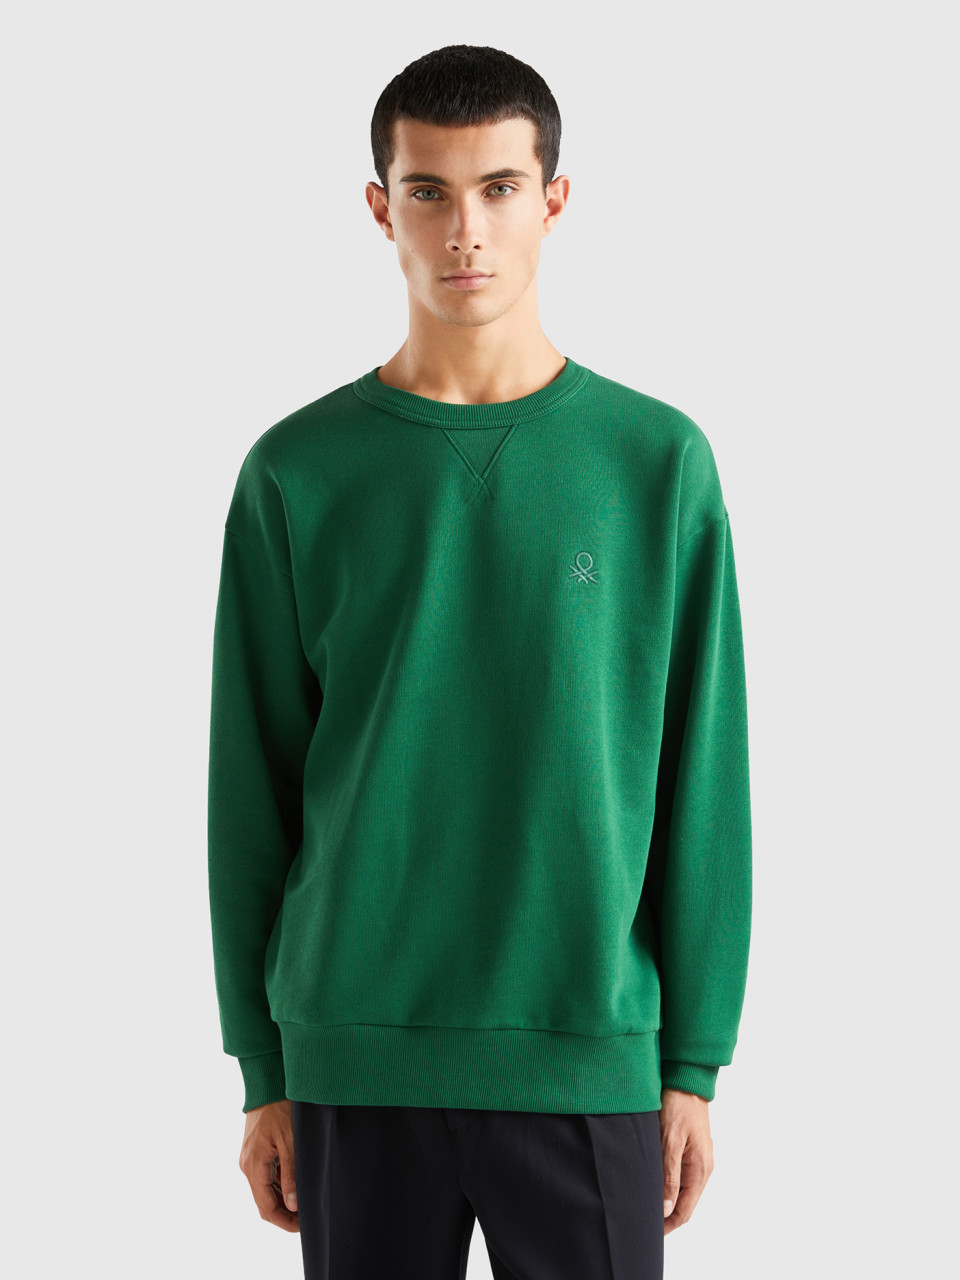 Benetton, Warmer Rundhals-sweater, Grün, male